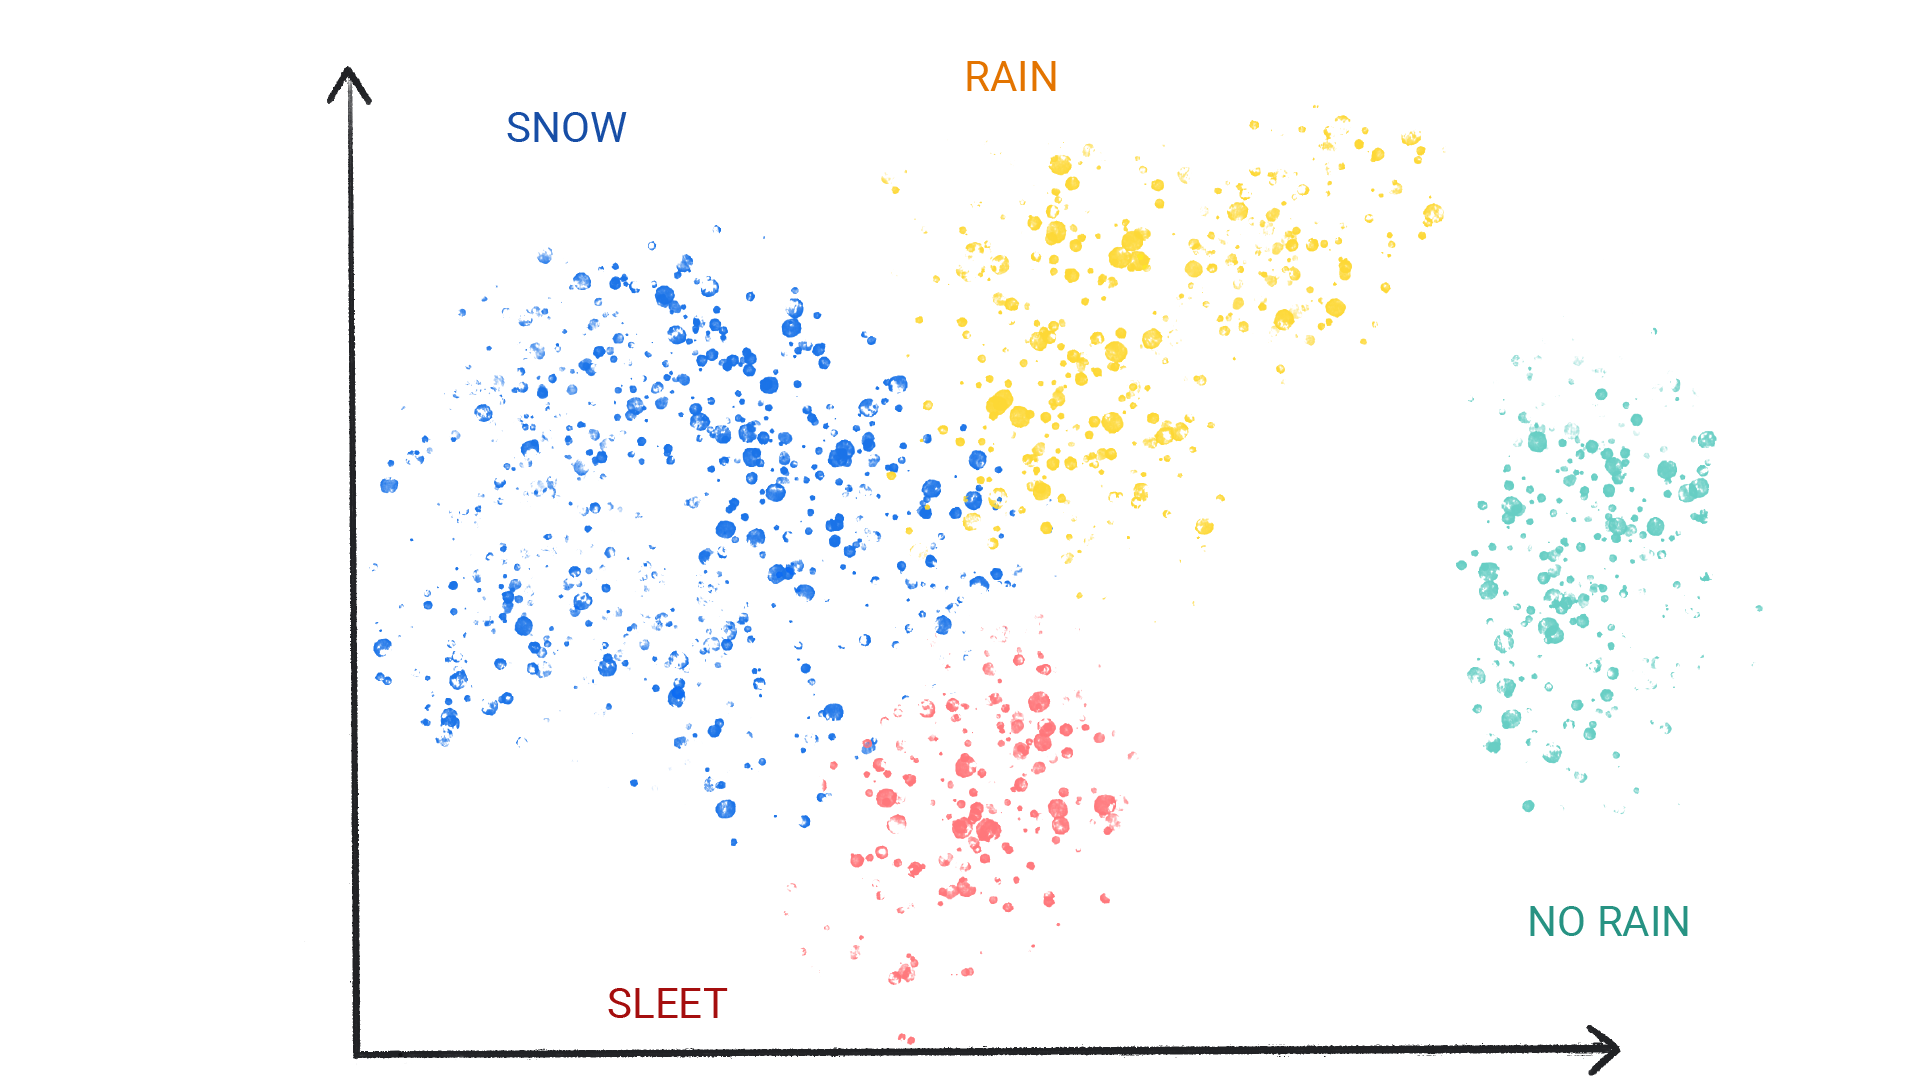 눈, 비, 우박, 비 오지 않음으로 라벨이 지정된 클러스터 안에 색상 점이 있는 이미지입니다.